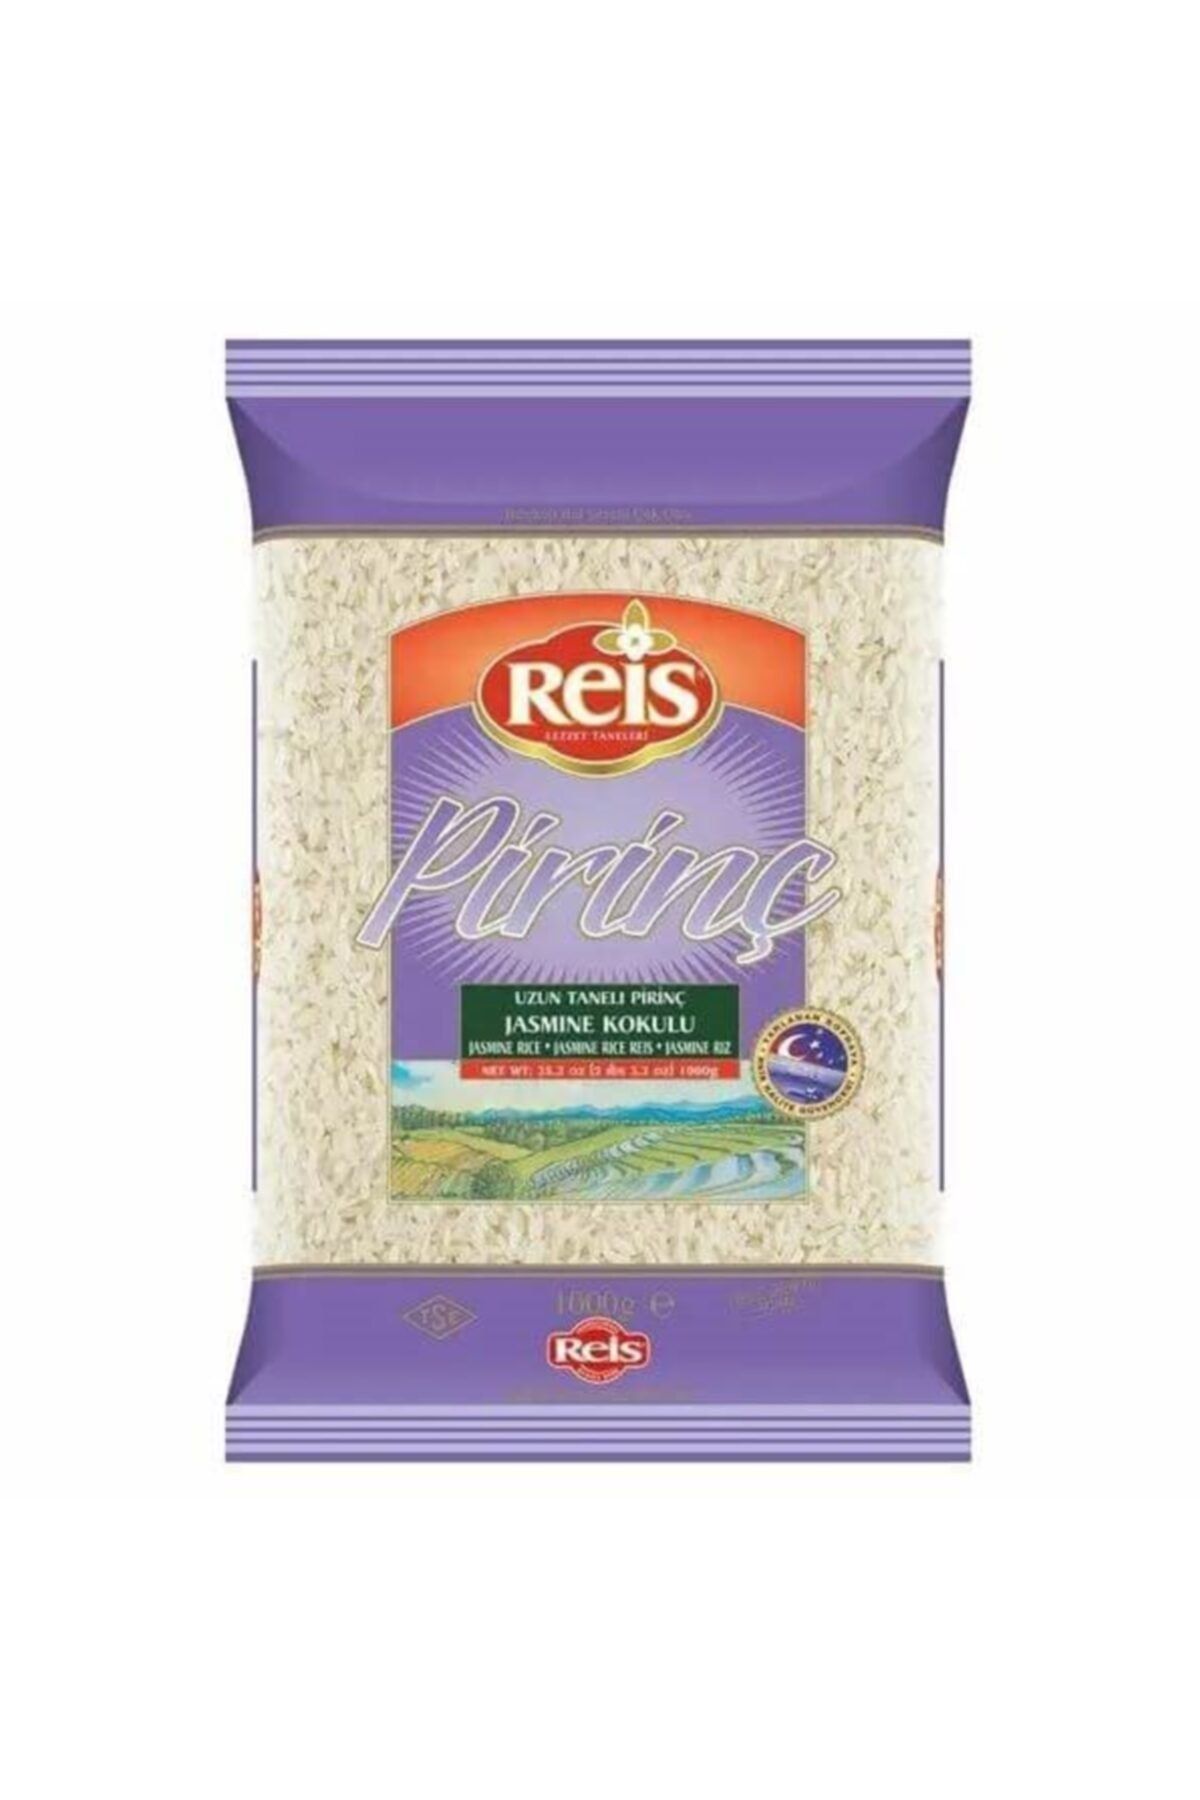 Reis Bakliyat Jasmine Pirinç 1 kg